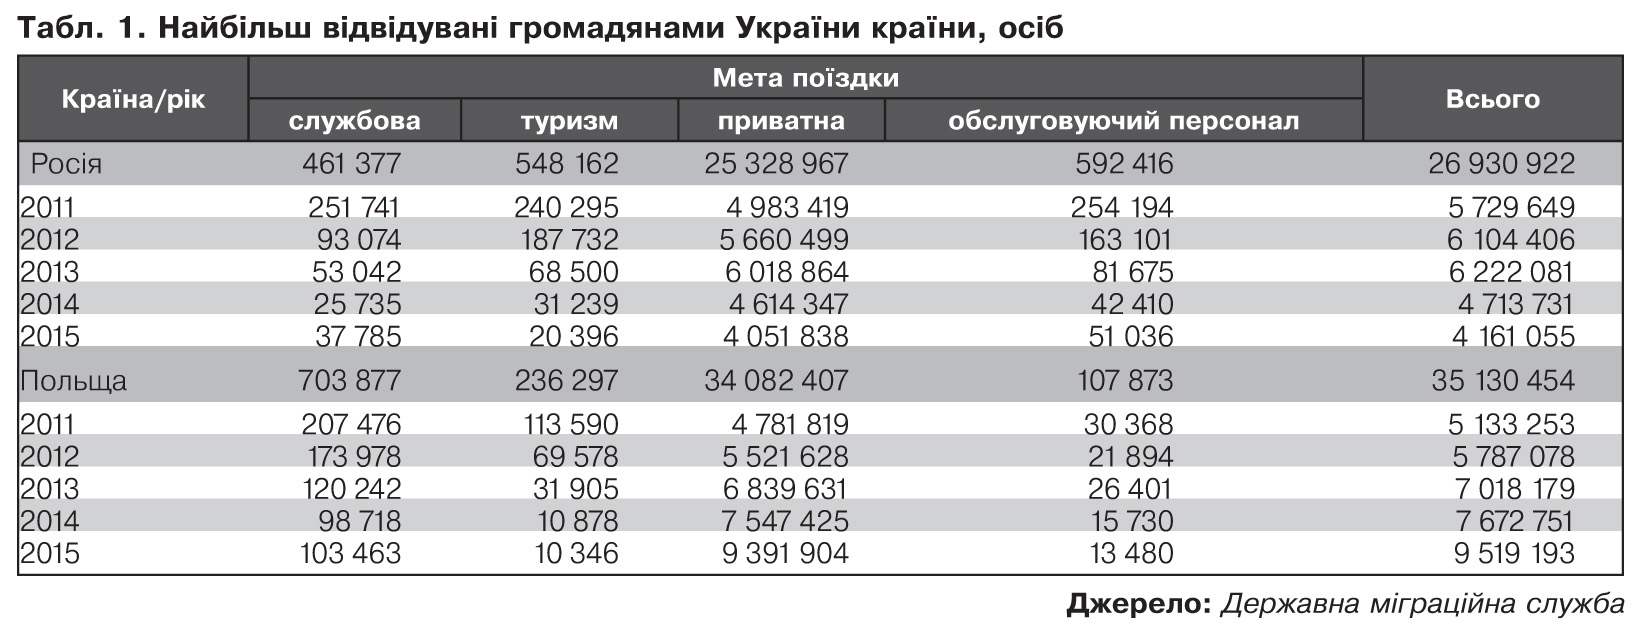 На Росії працюють до 40% трудових мігрантів з України, - ЗМІ - фото 1